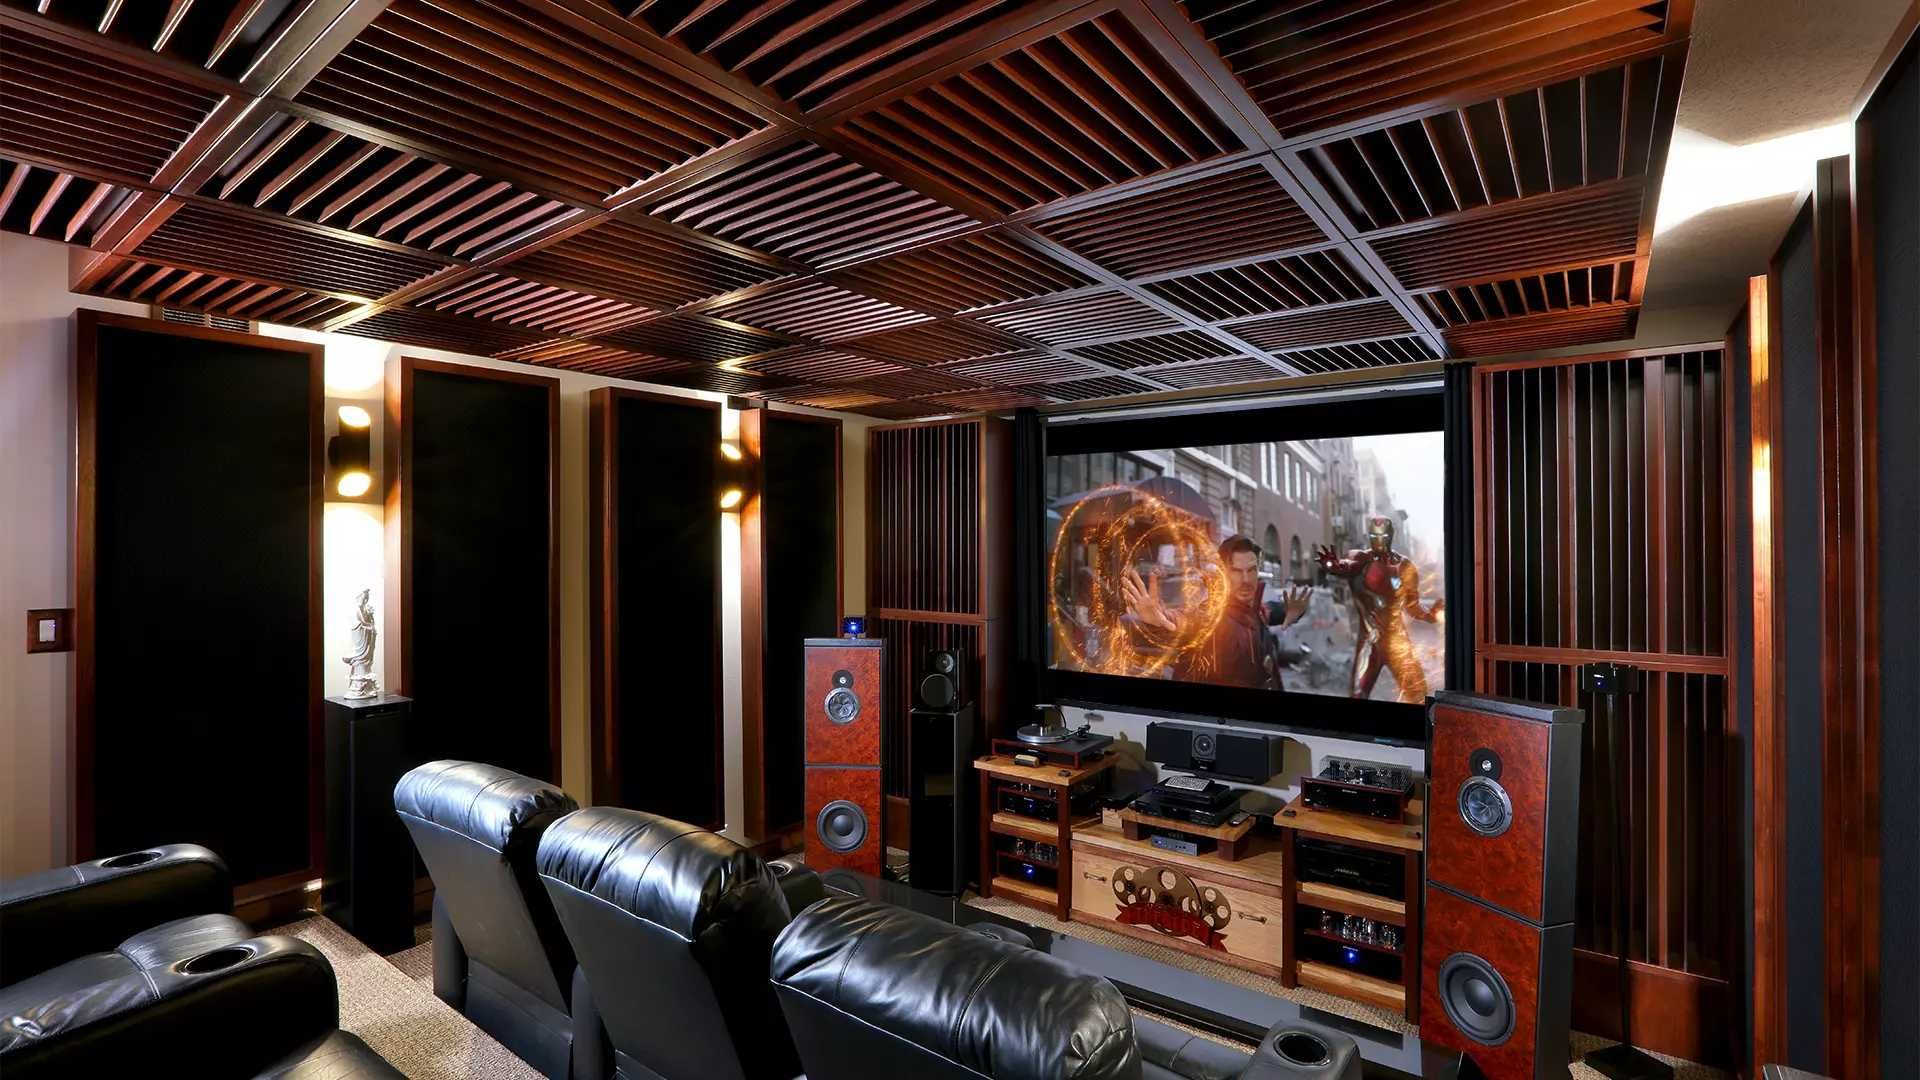 Instalacje audio - kino domowe TV - stereo - doradztwo i konfiguracja